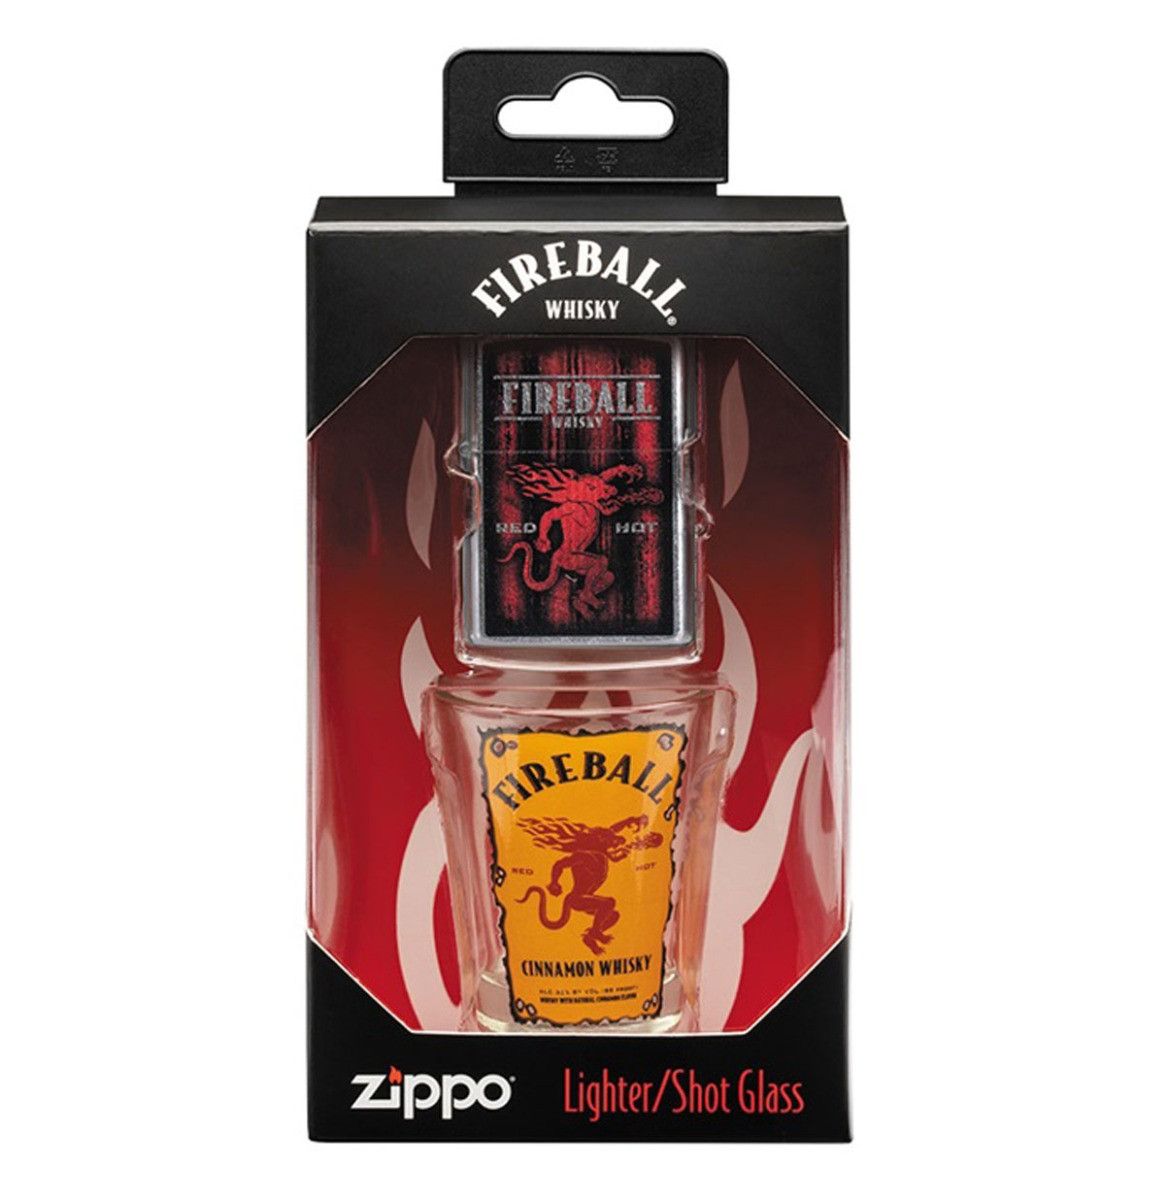 Zippo Fireball Whisky Aansteker En Shot Glaasje Cadeauset